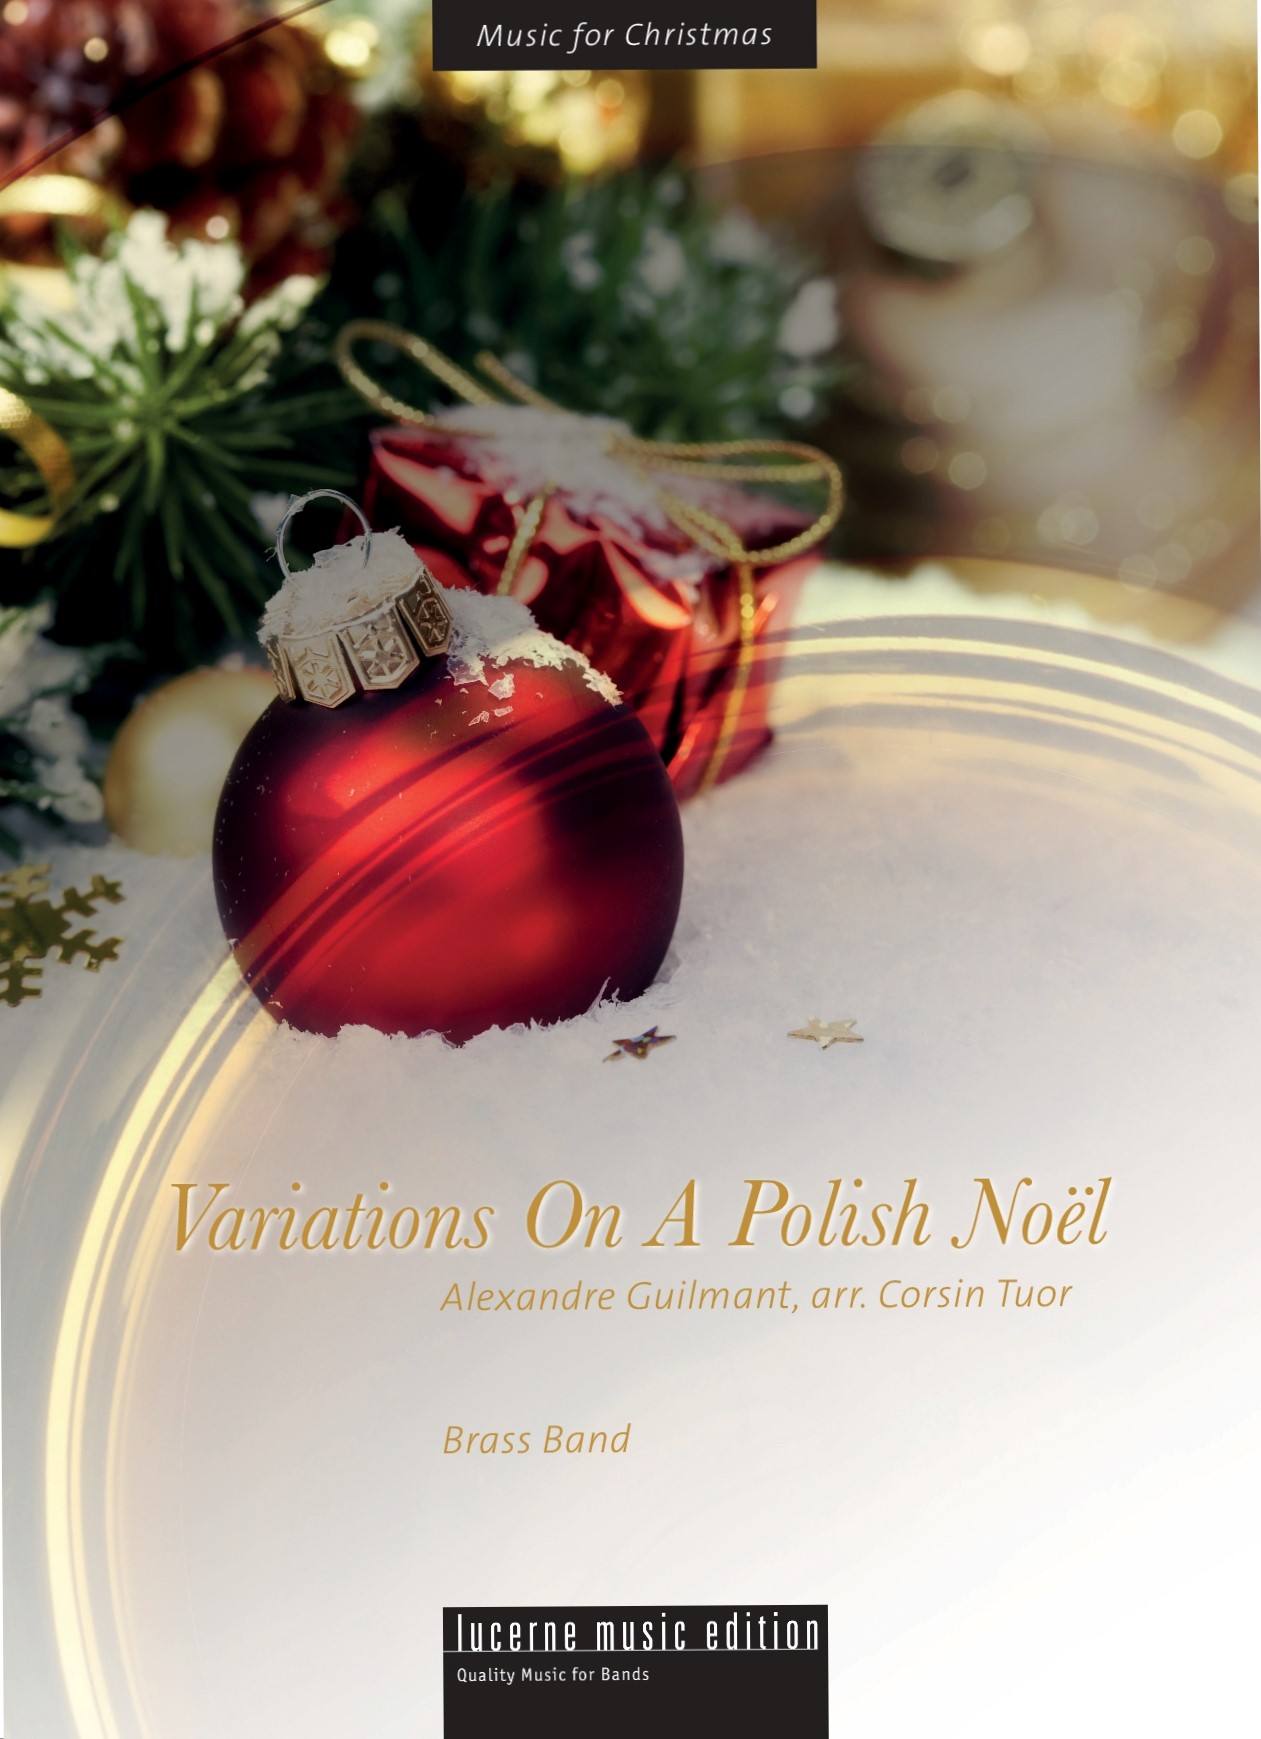 Variations on a Polish Noël